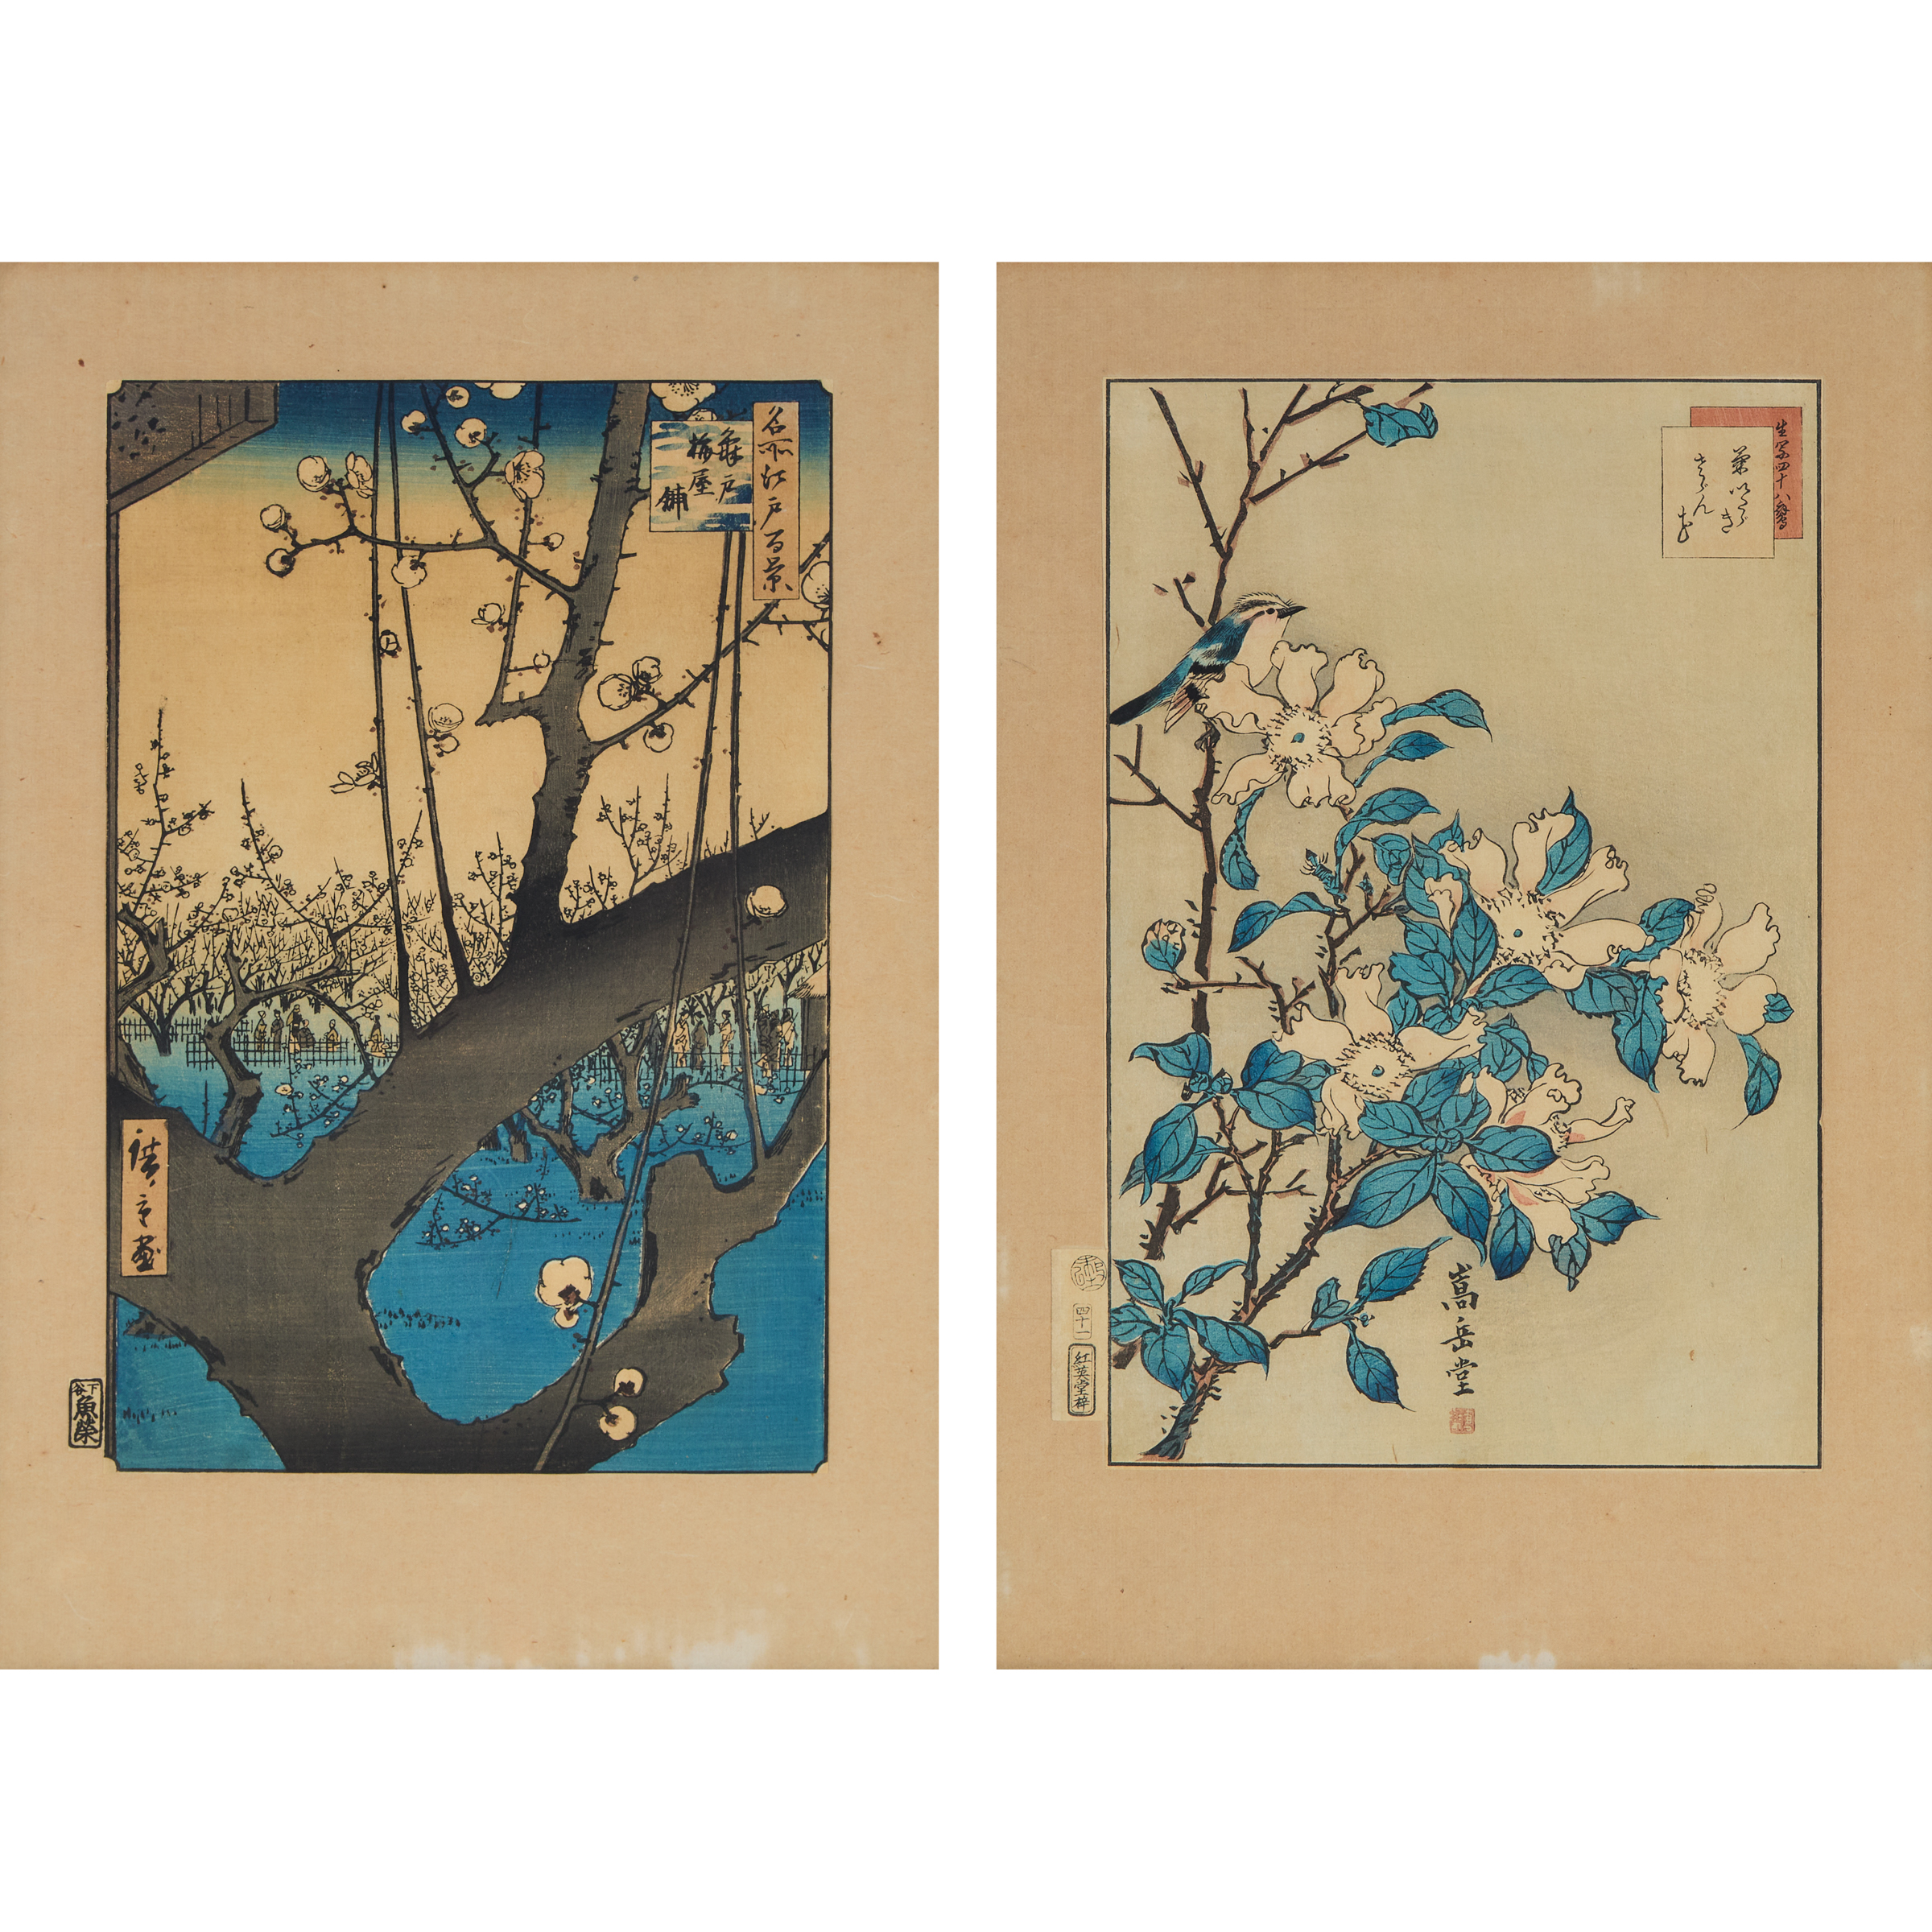 Utagawa Hiroshige (1797-1858) and